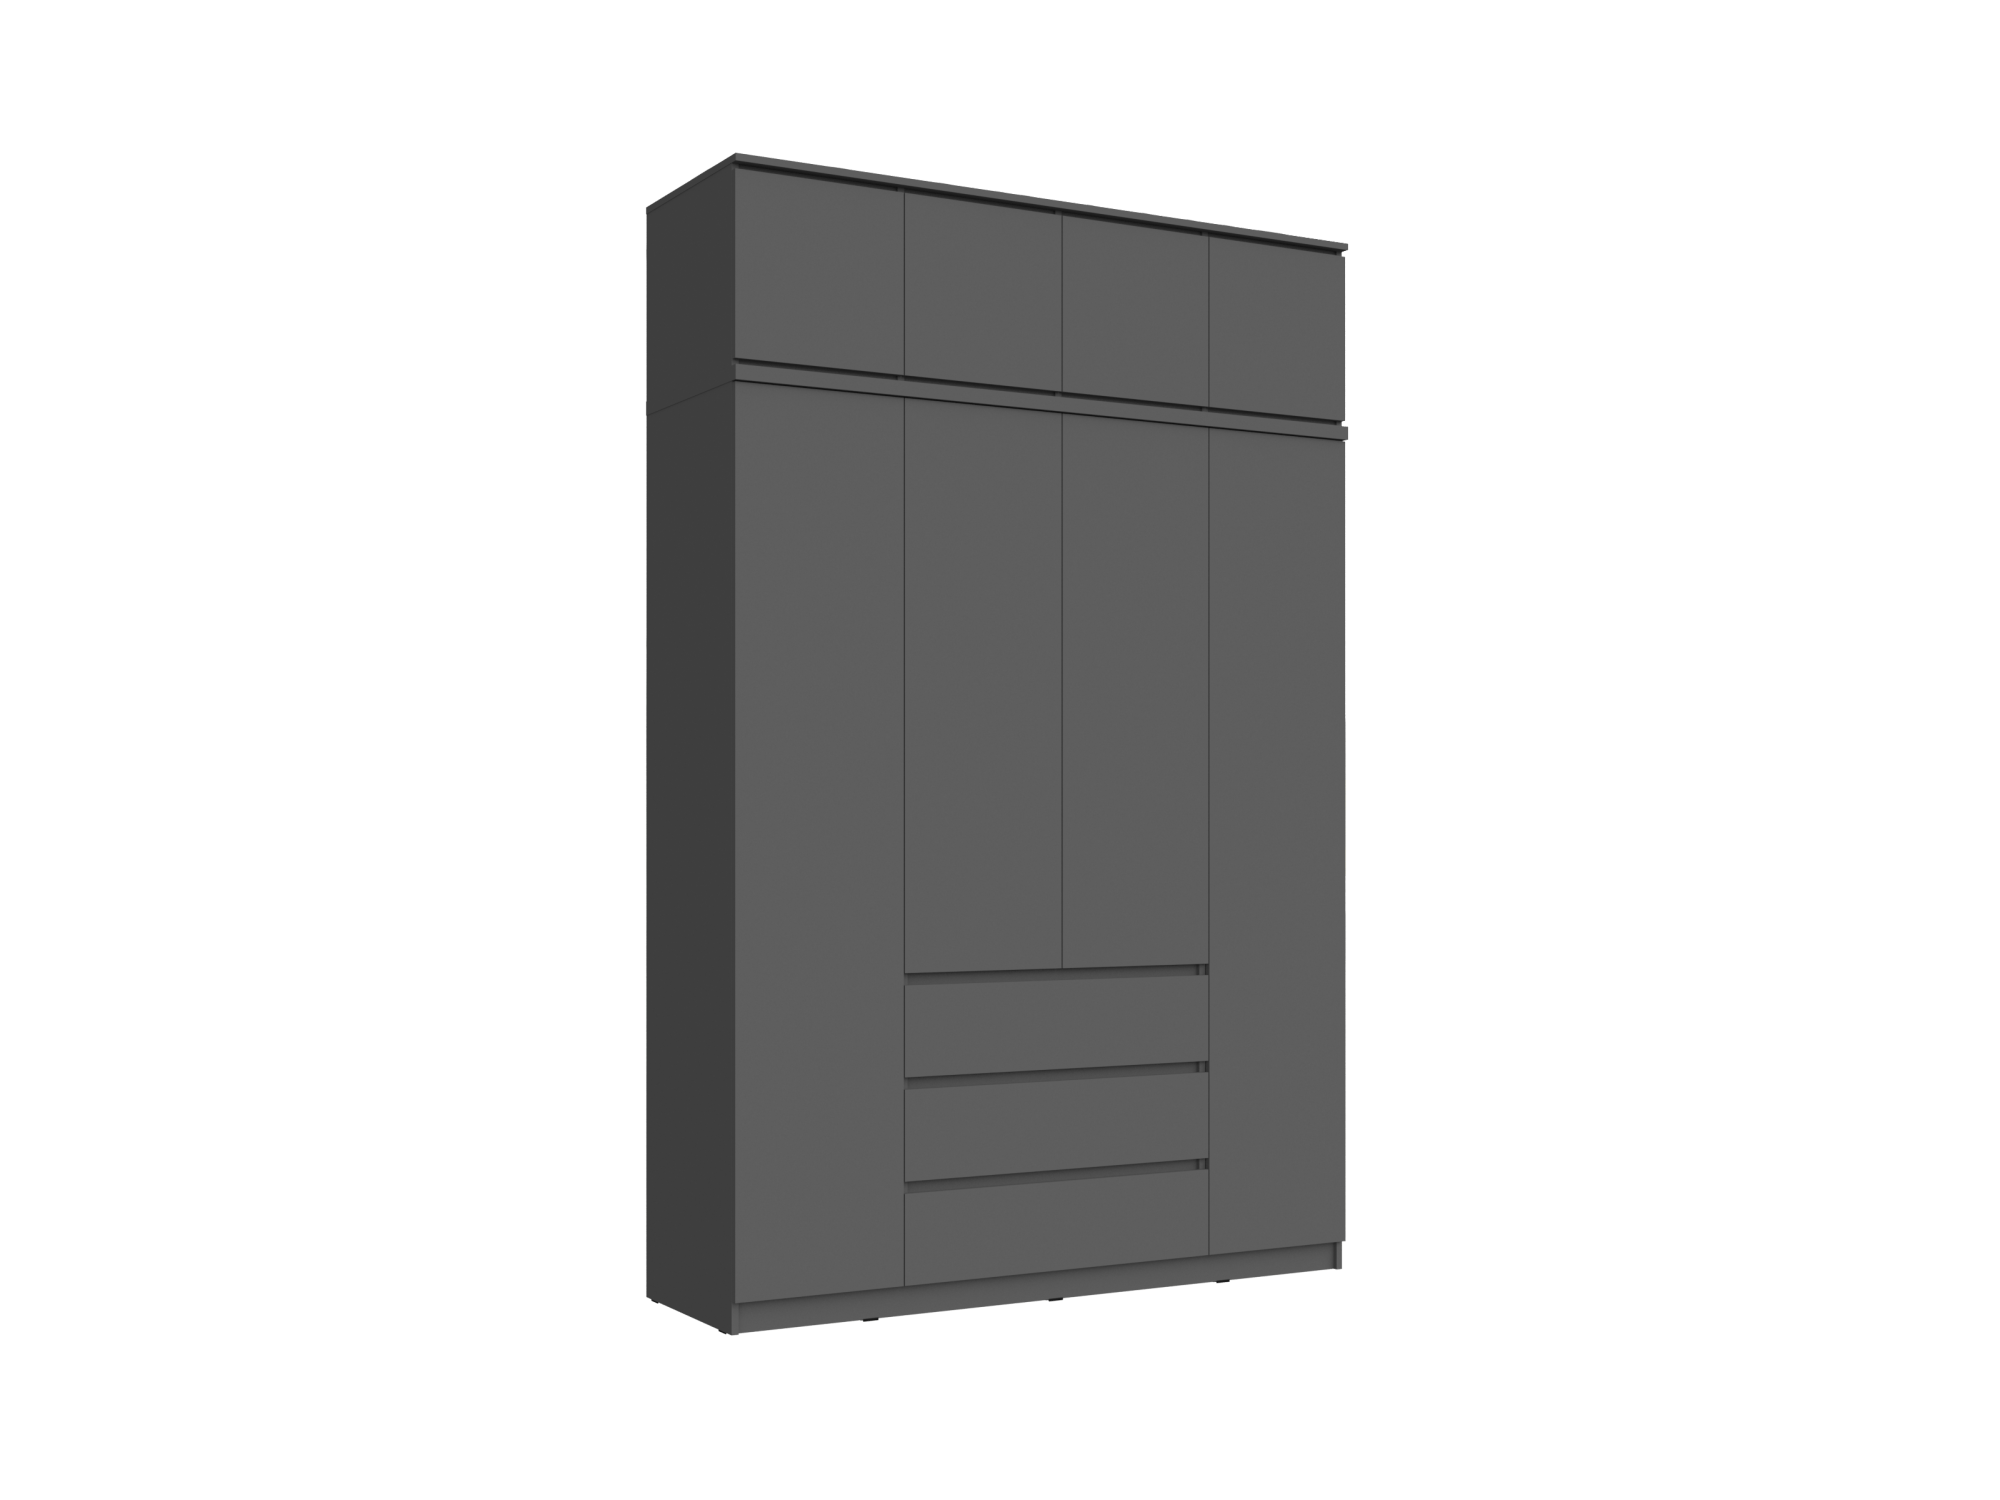 Челси Шкаф 1600 + антресоль 1600 (Графит, Графит) Черный, ЛДСП челси антресоль тумба универсальная графит графит графит черный лдсп